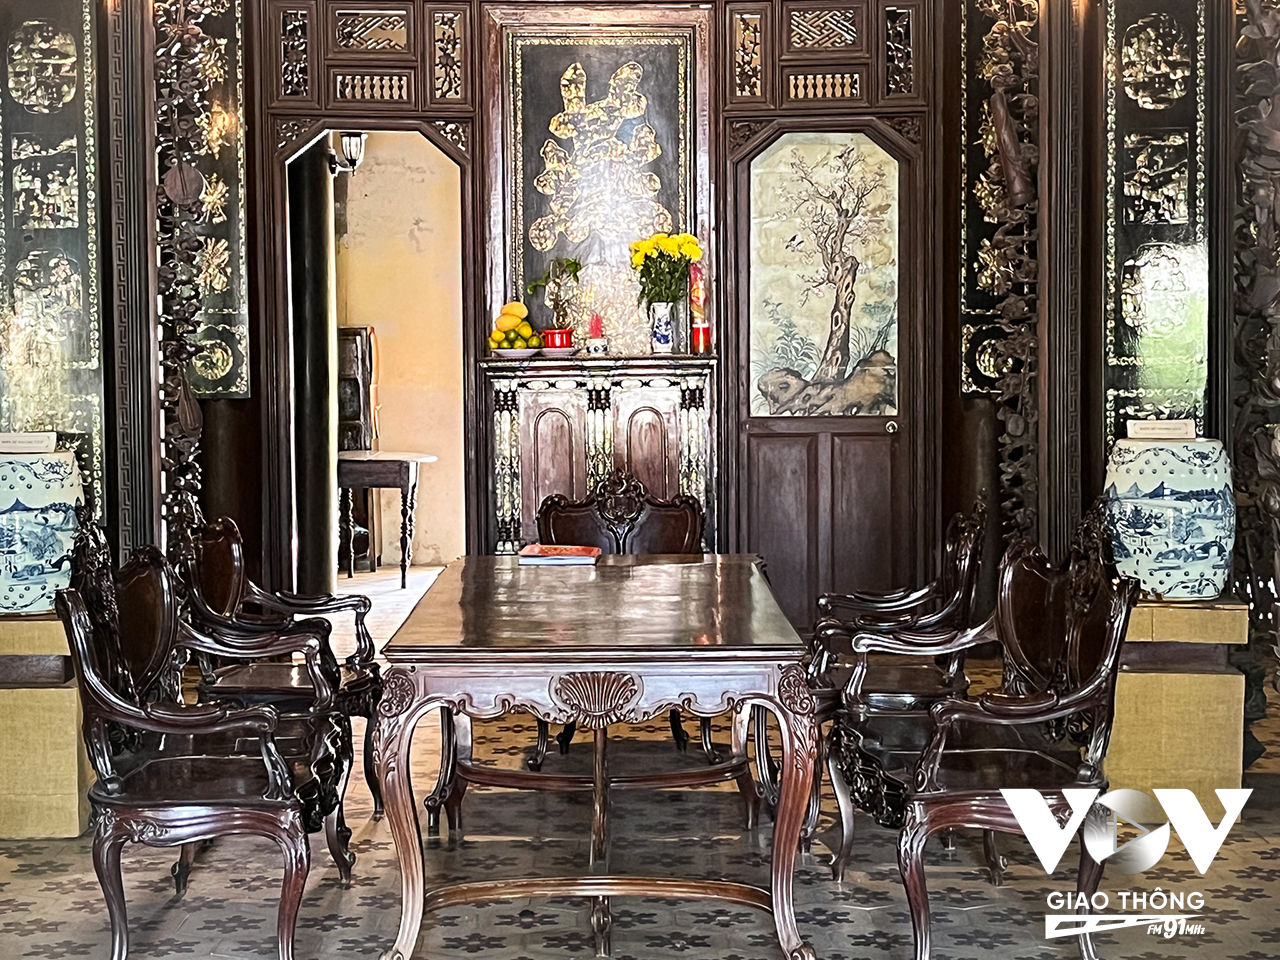 Các nội thất trong nhà đều được thiết kế bằng vật liệu quý như chiếc giường Thất Bảo hay bộ bàn ghế mang phong cách Louis